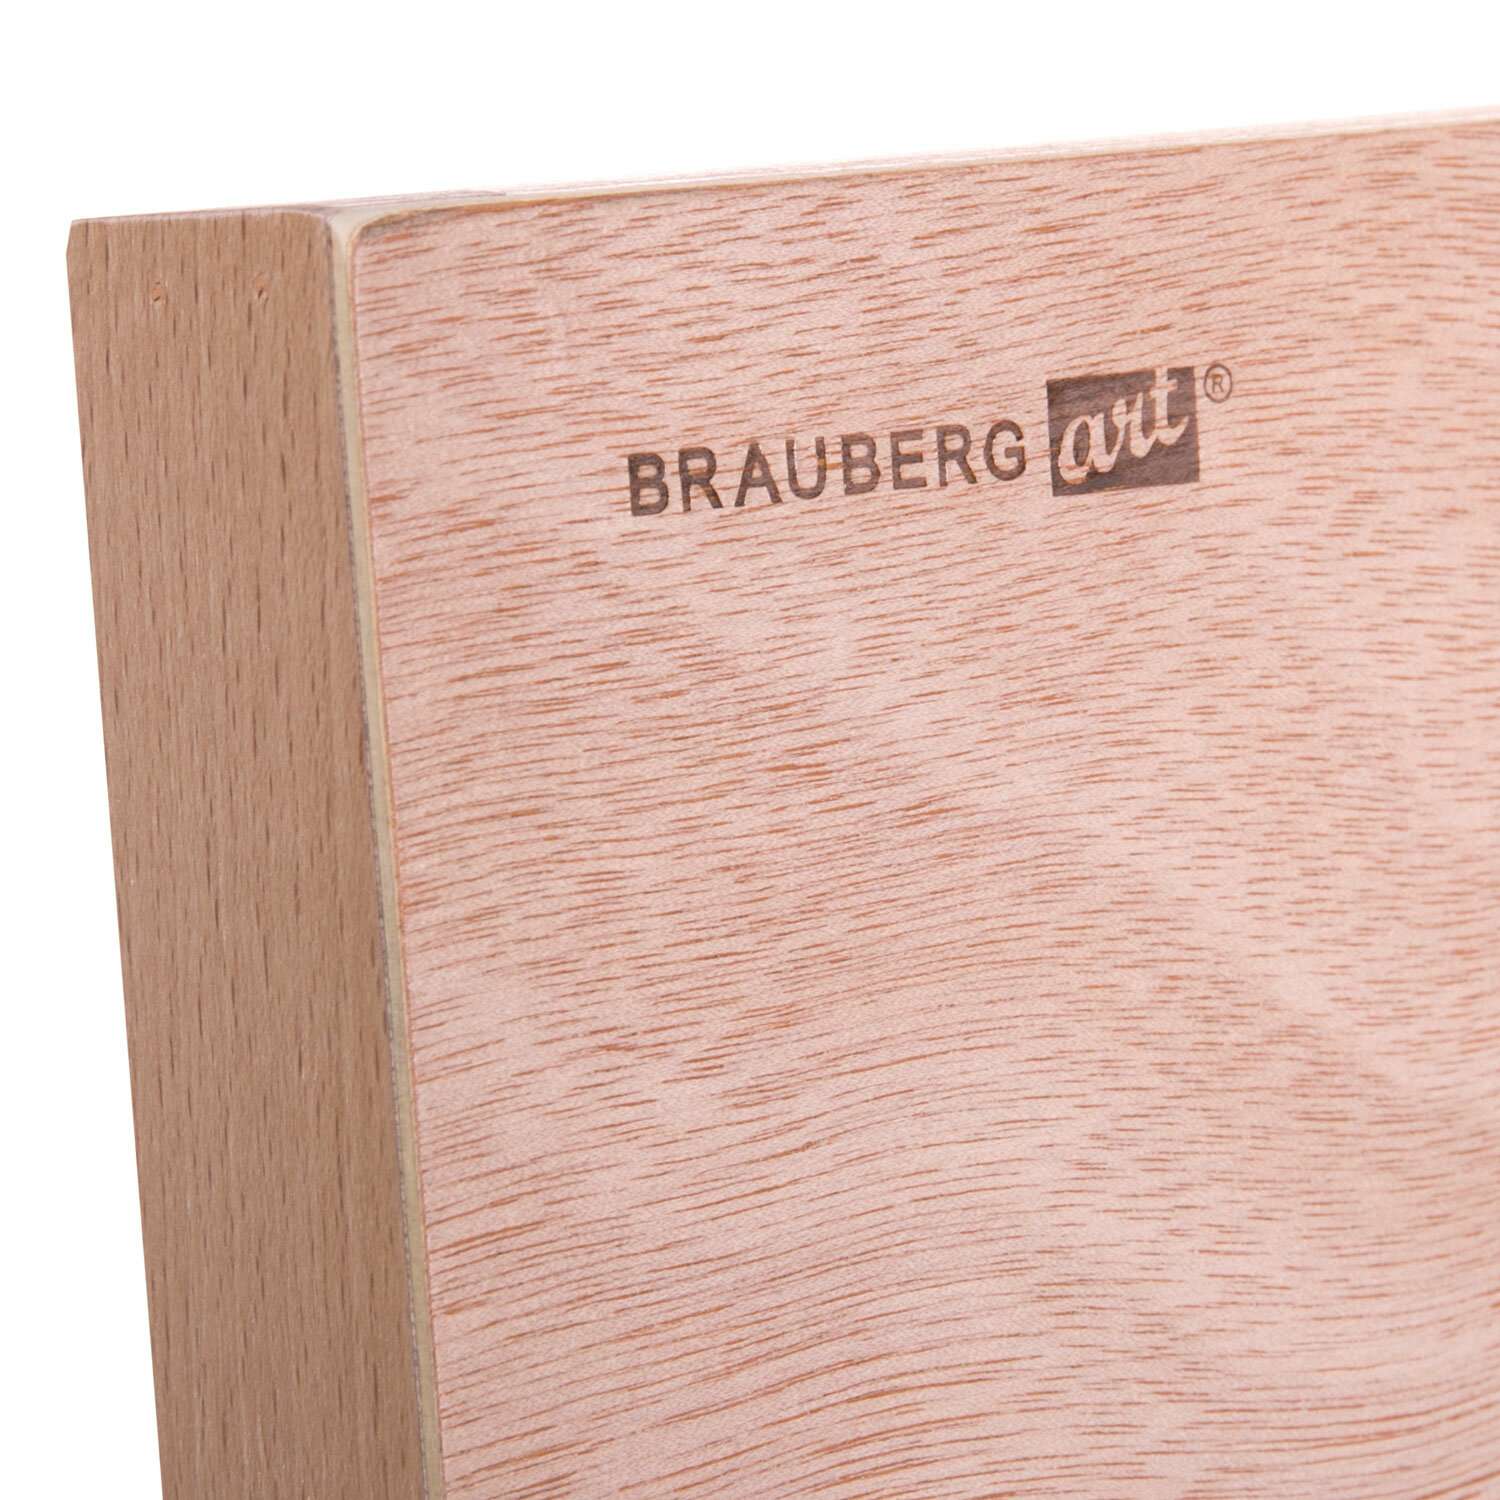 Мольберт настольный Brauberg для рисования настольный деревянный - фото 8